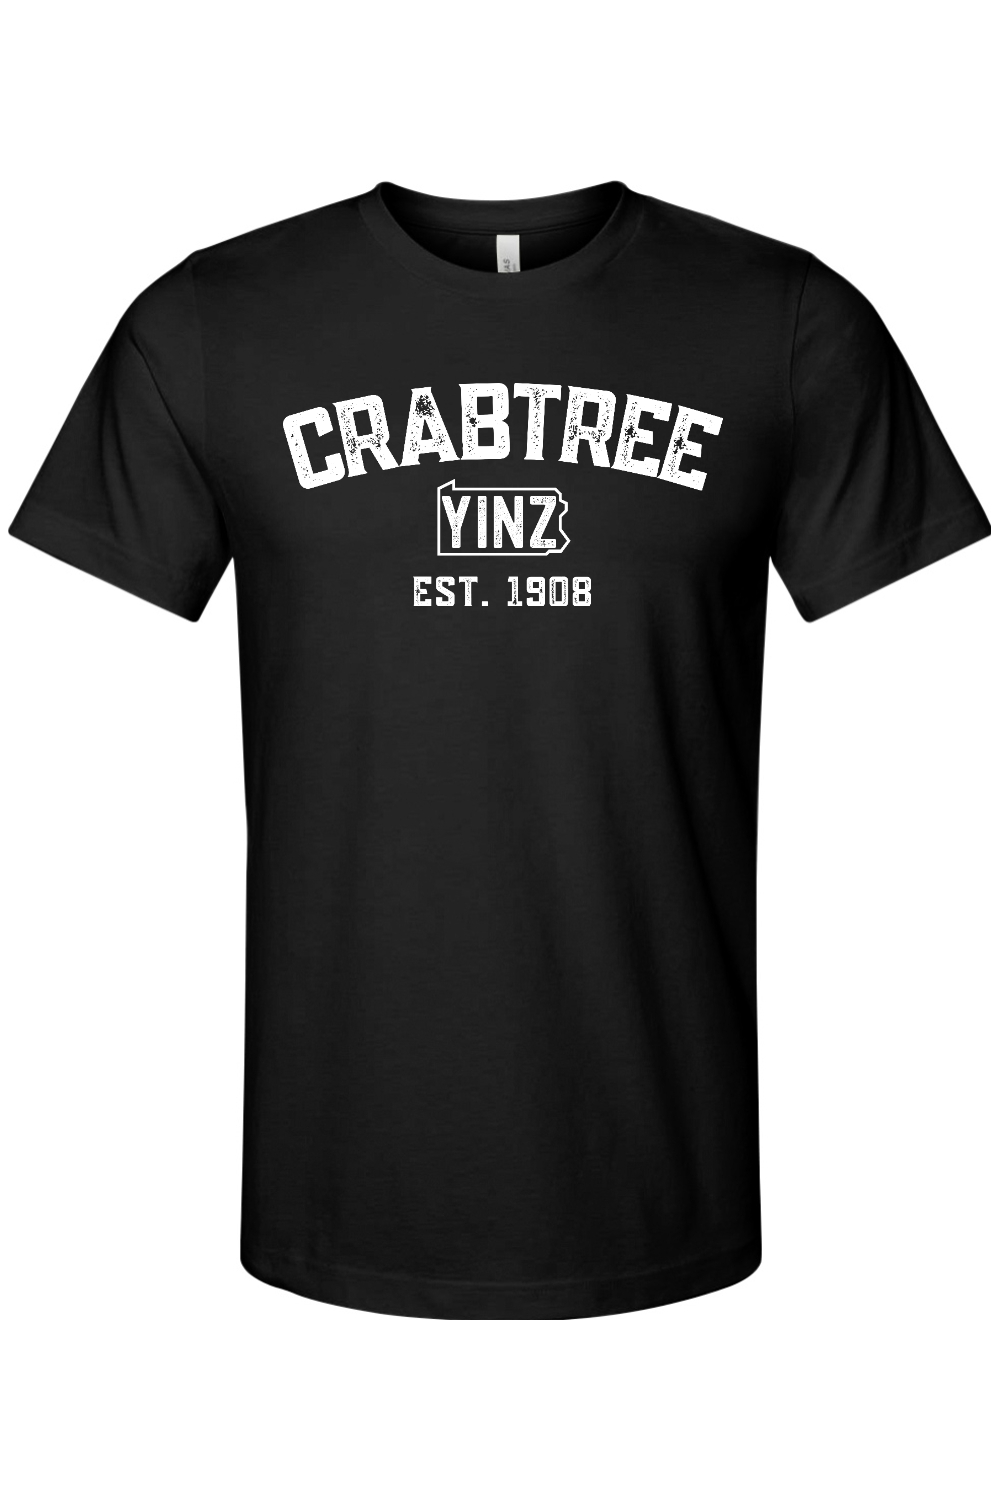 Crabtree Yinzylvania - Yinzylvania